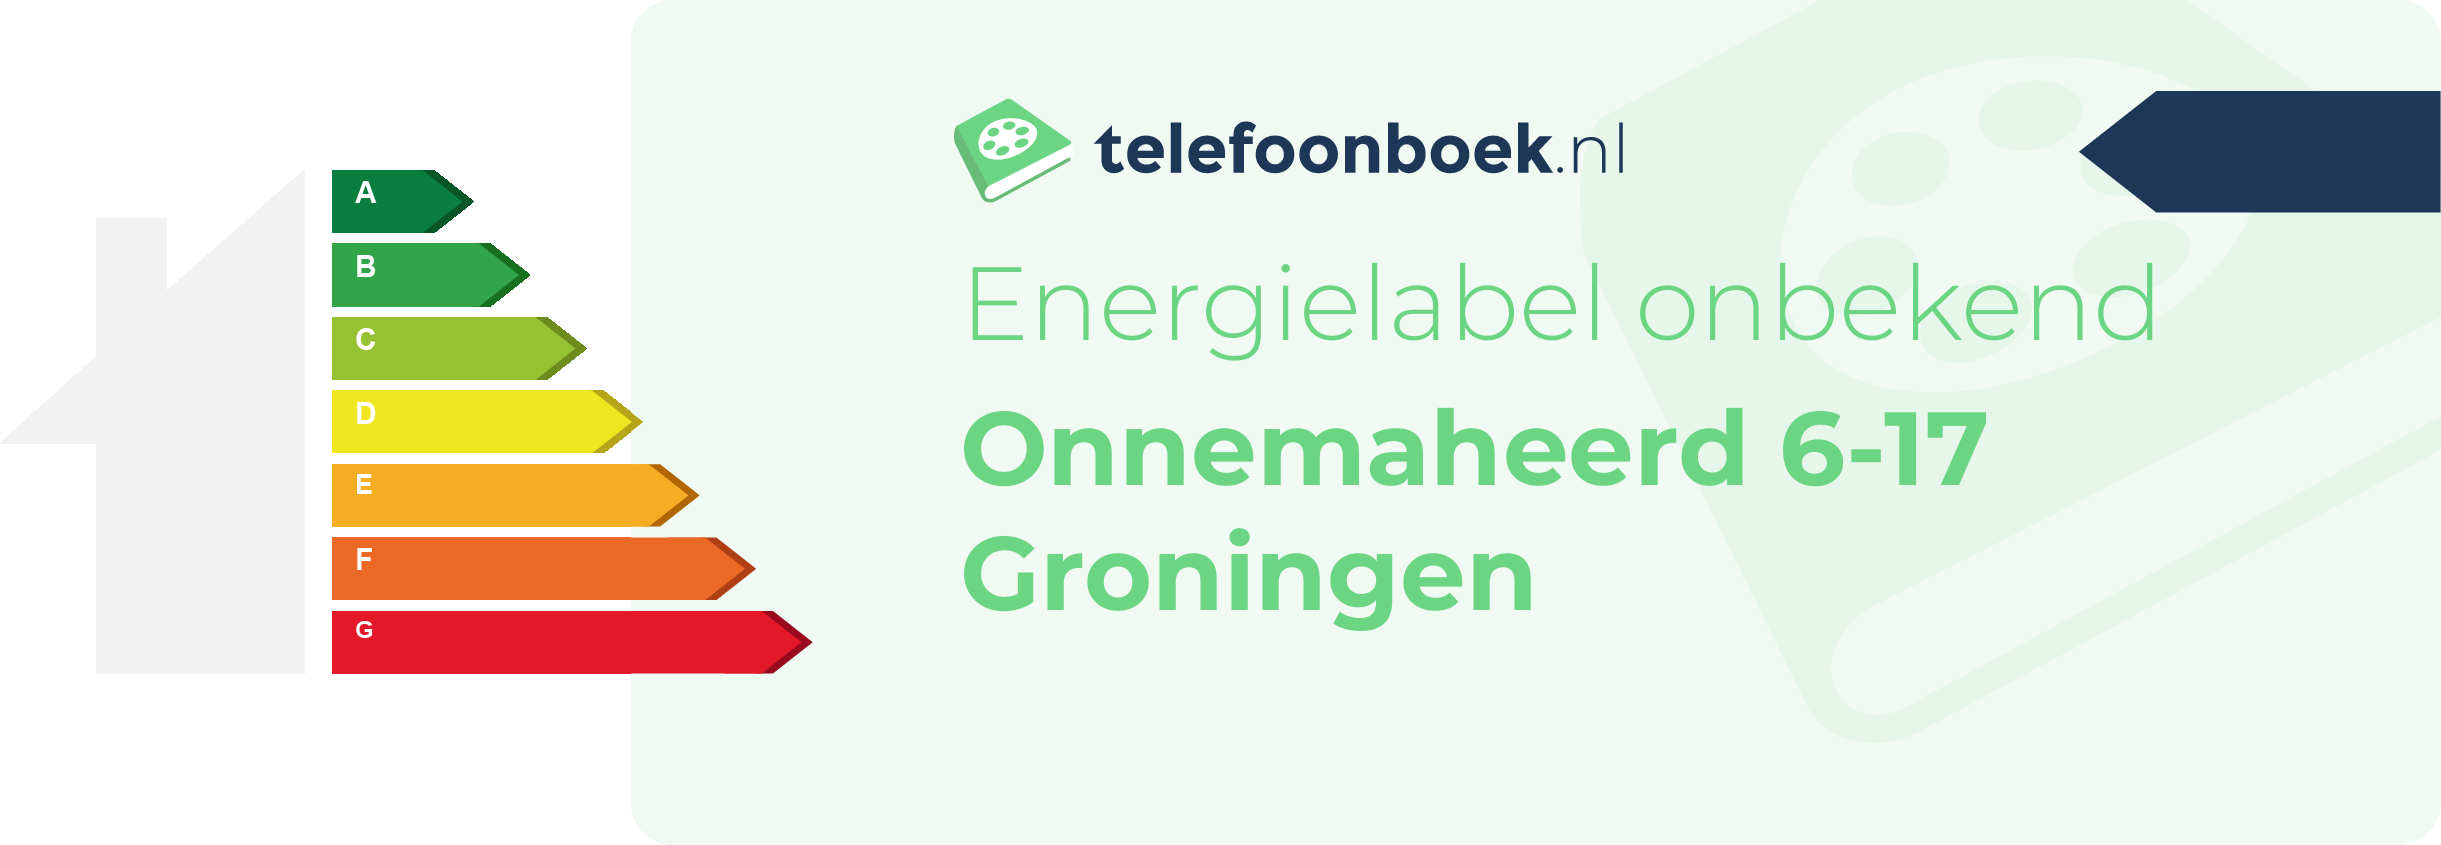 Energielabel Onnemaheerd 6-17 Groningen